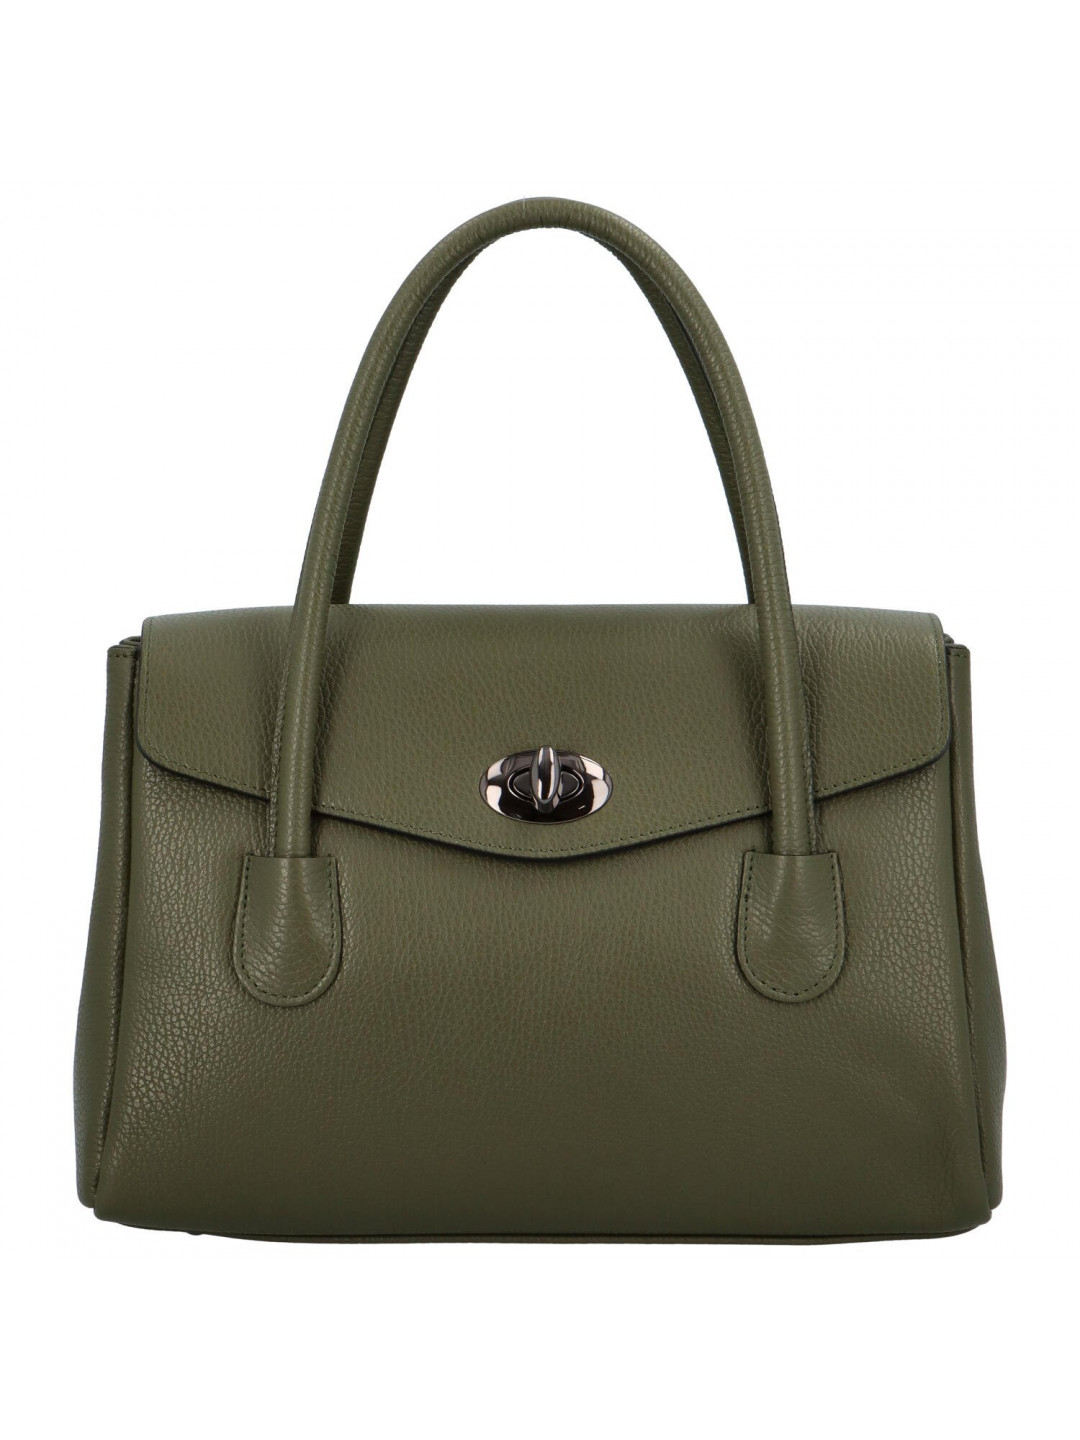 Kufříková dámská kožená kabelka do ruky Arlingto tmavě zelená